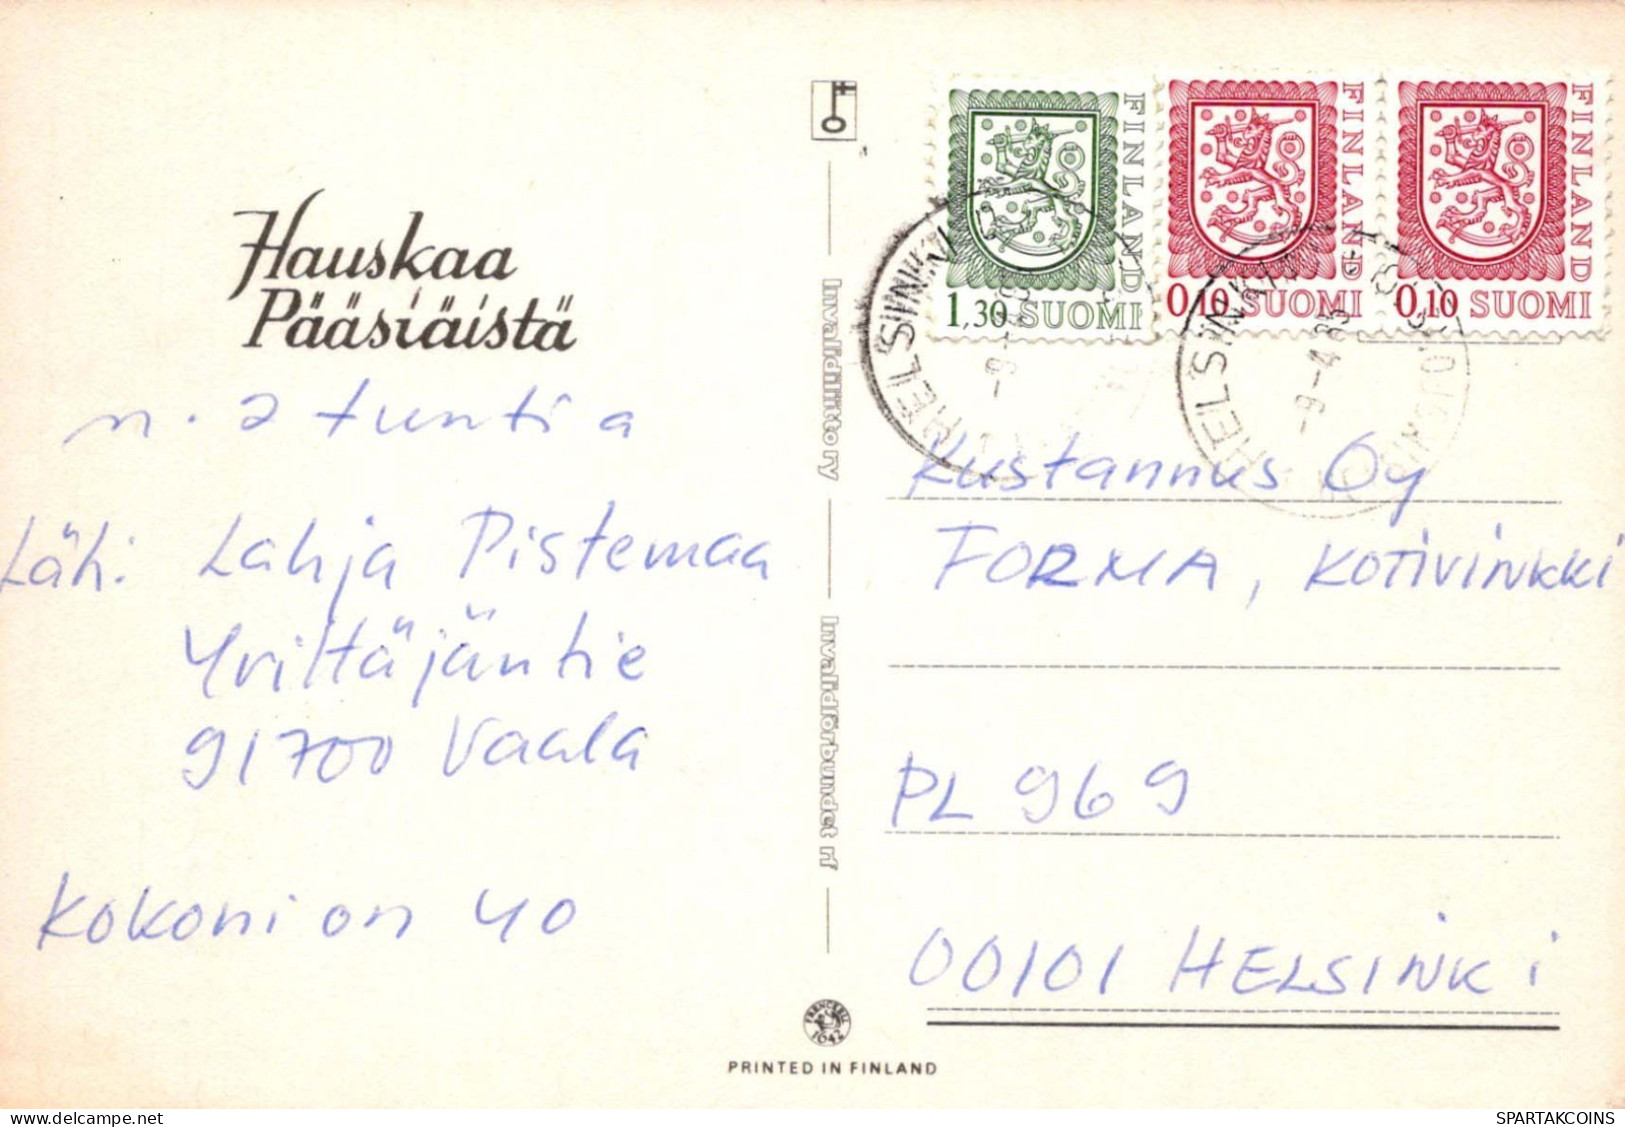 OSTERN KANINCHEN Vintage Ansichtskarte Postkarte CPSM #PBO354.DE - Easter